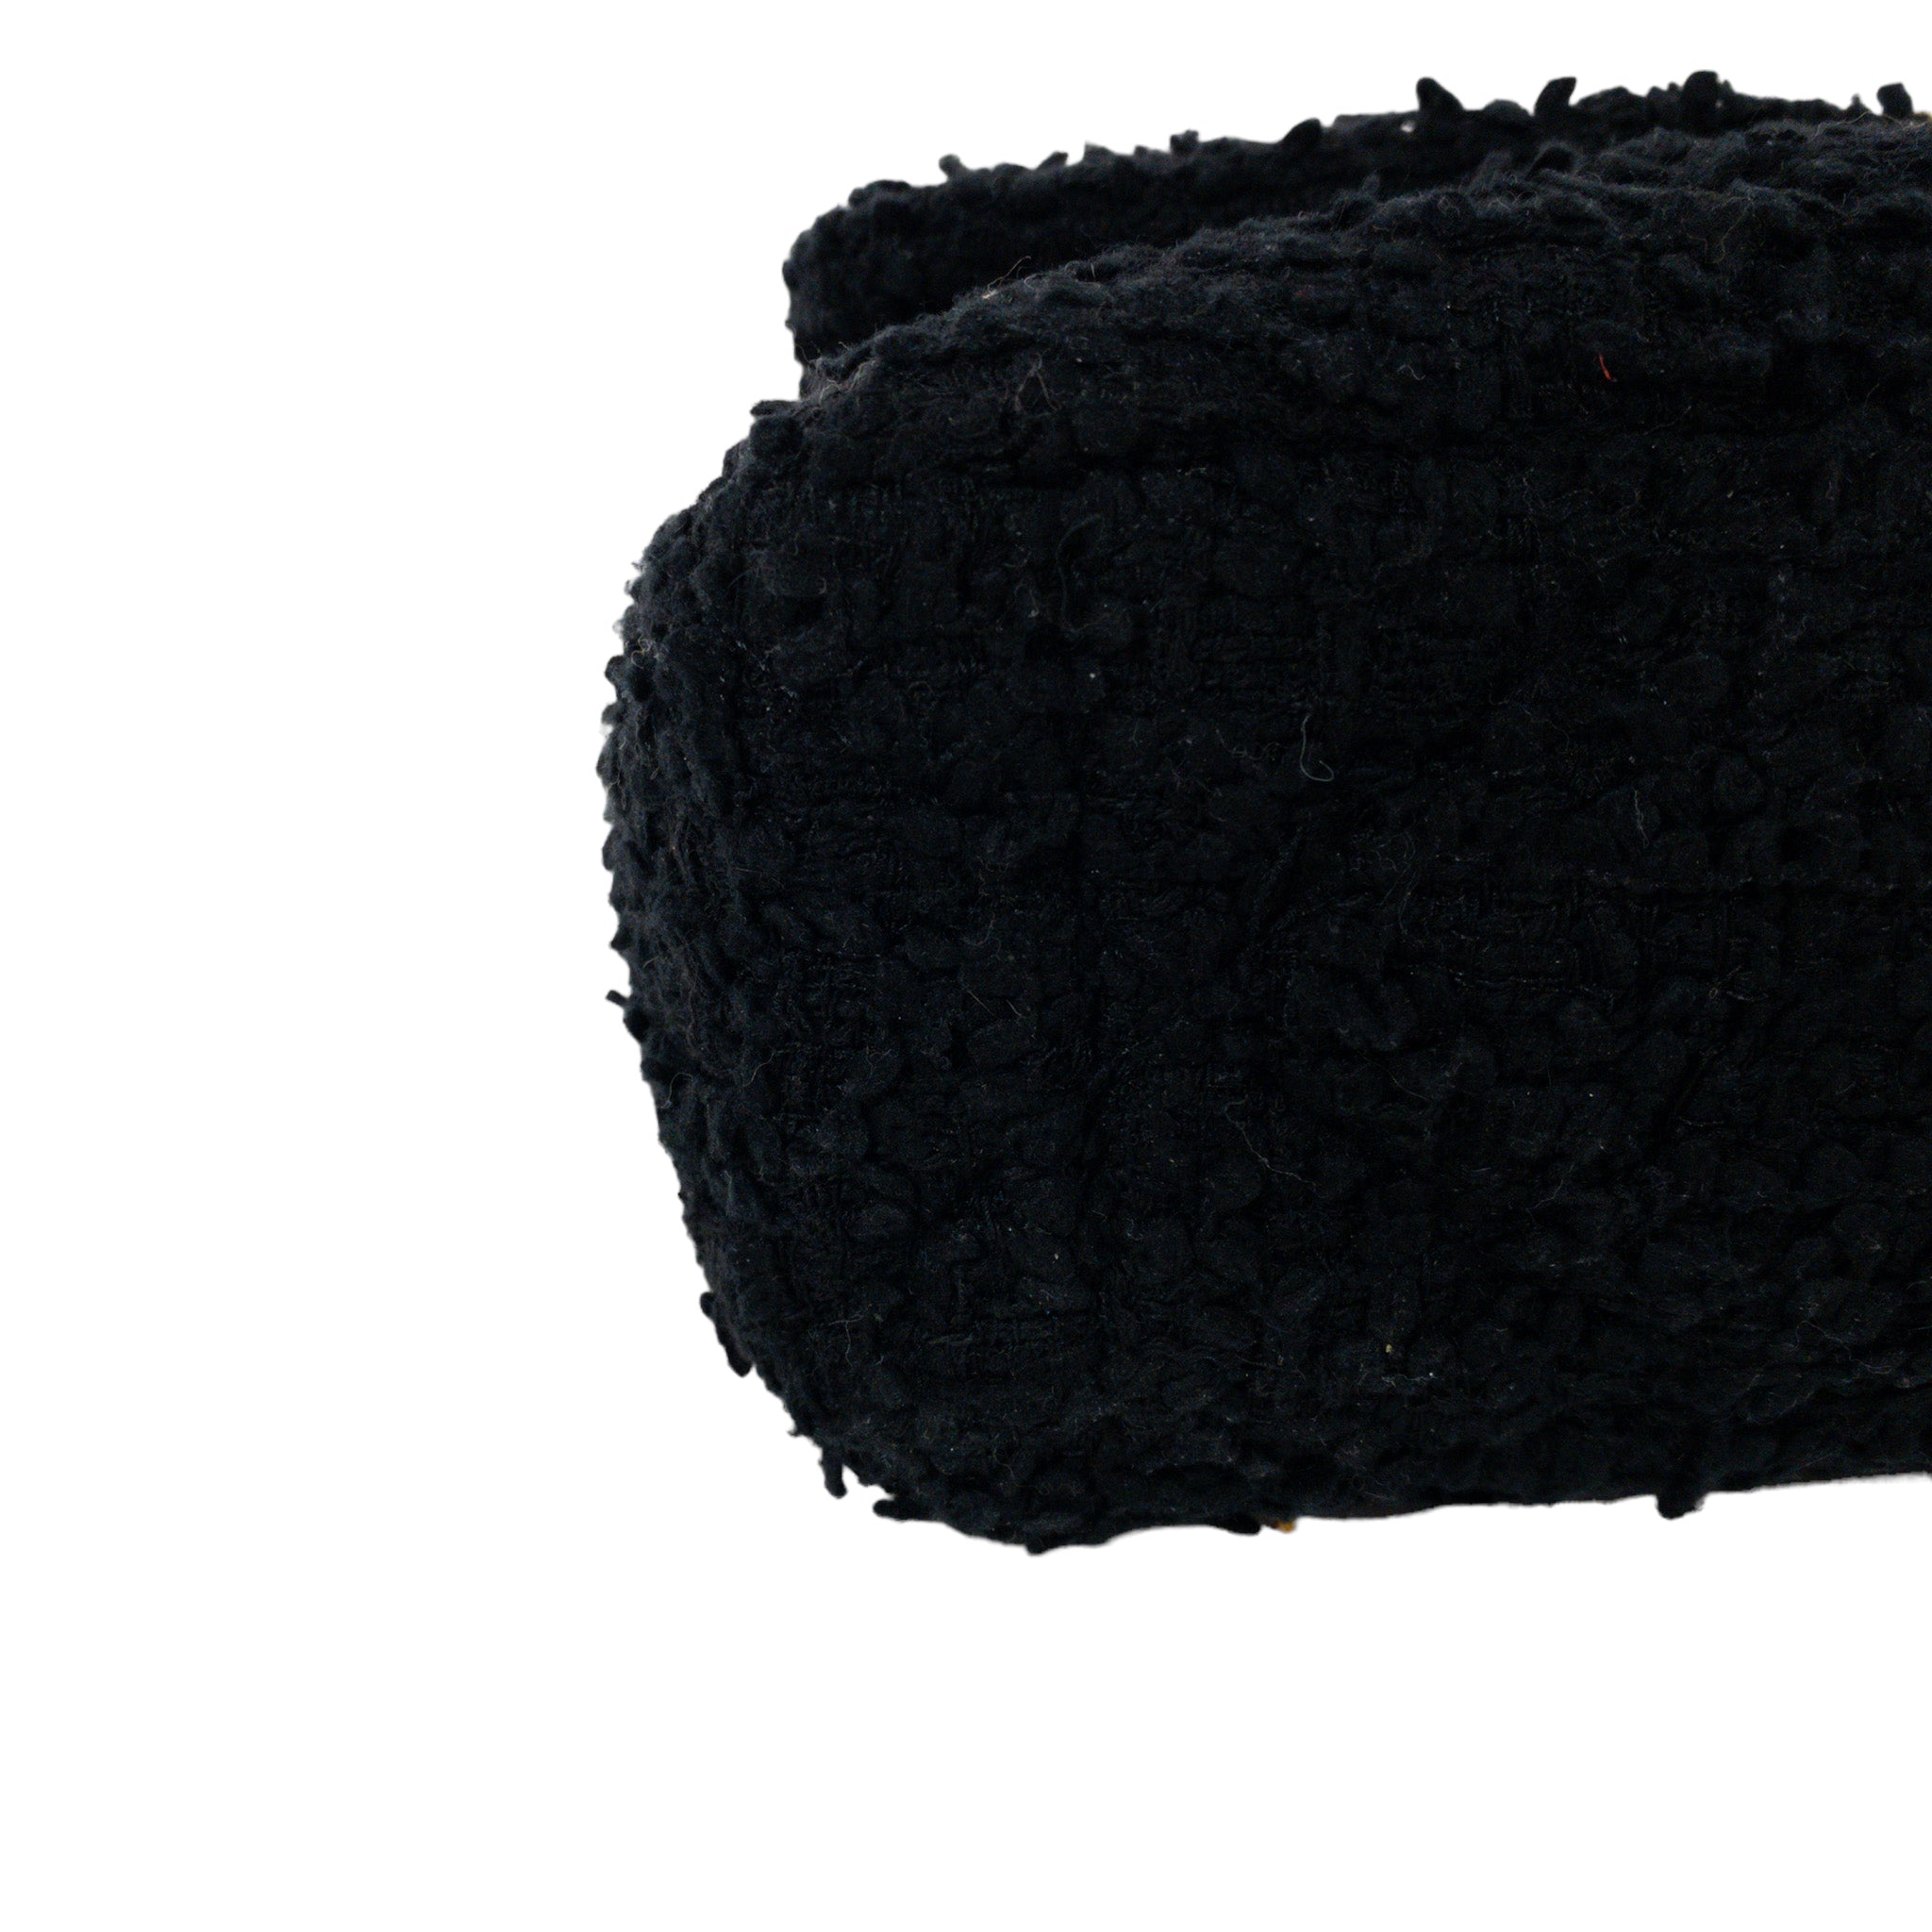 Chanel Black Tweed Large 19